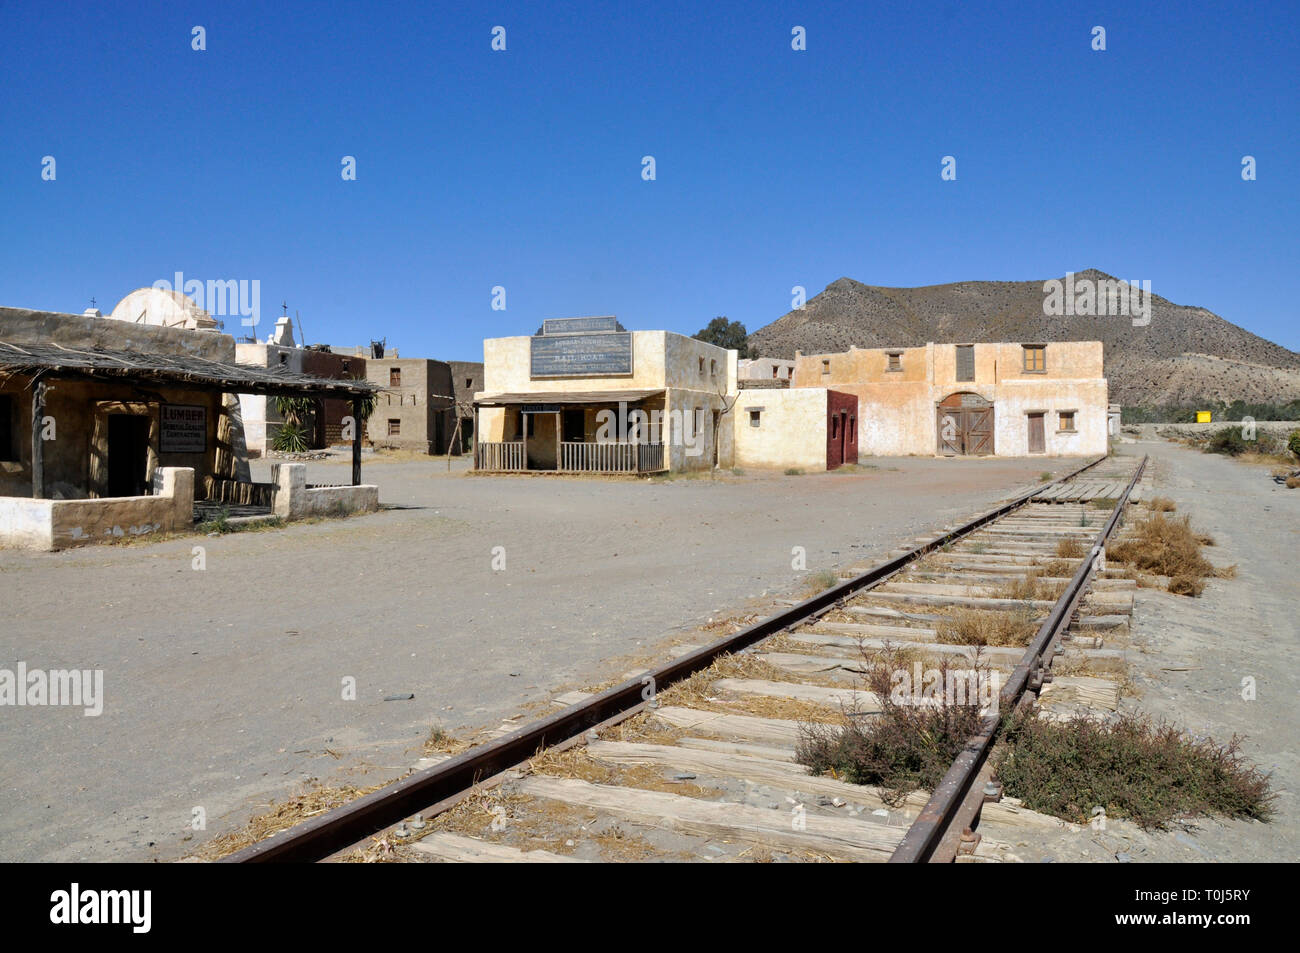 Le chemin de fer à Fort Bravo western parc à thème de Tabernas, Almeria, Espagne anciennement un décor de cinéma pour les films hollywoodiens. Banque D'Images